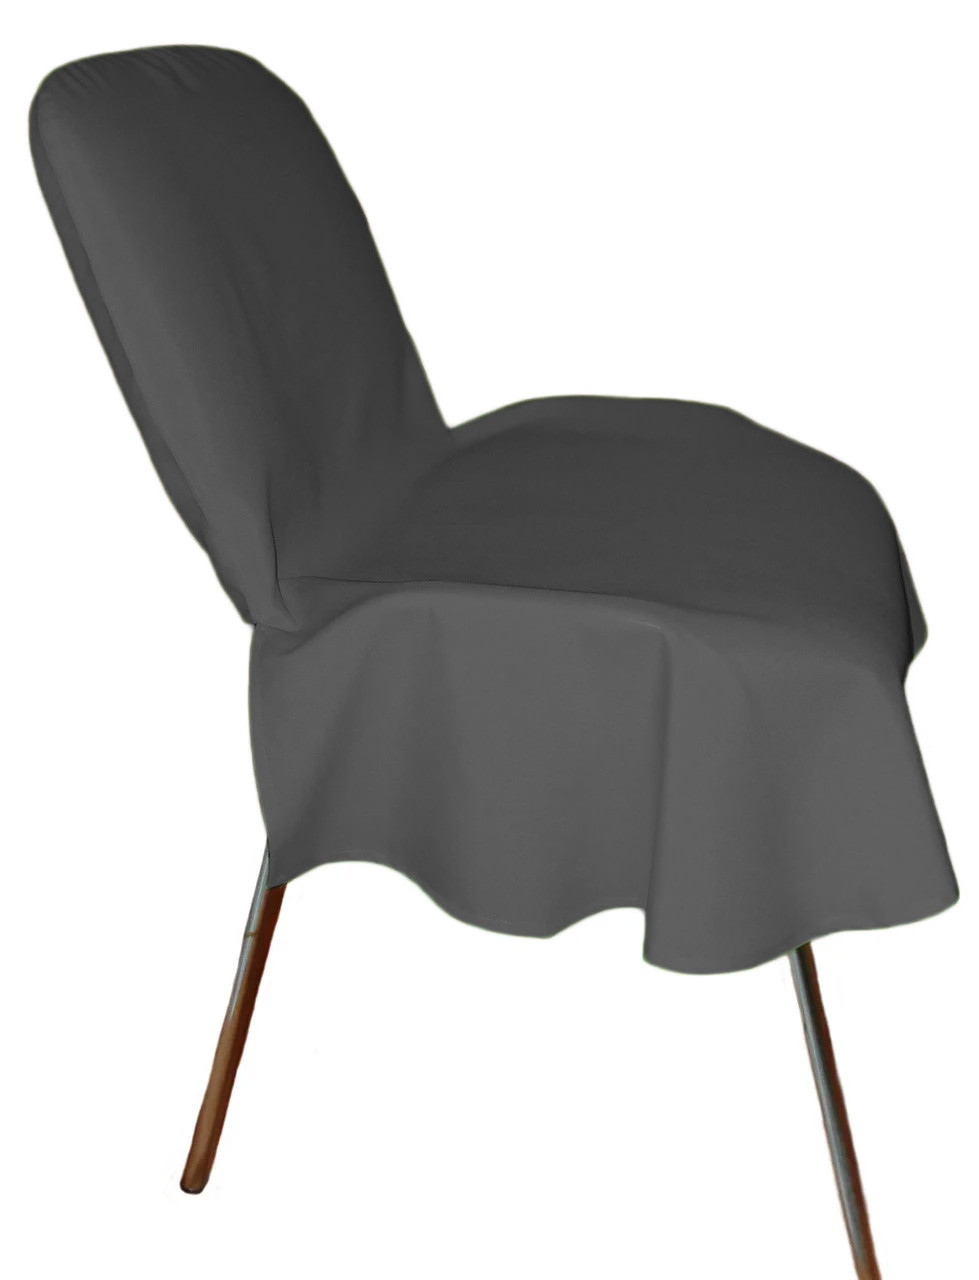 

Чехол накидка на офисный стул темно-серый Atteks - 1351-3